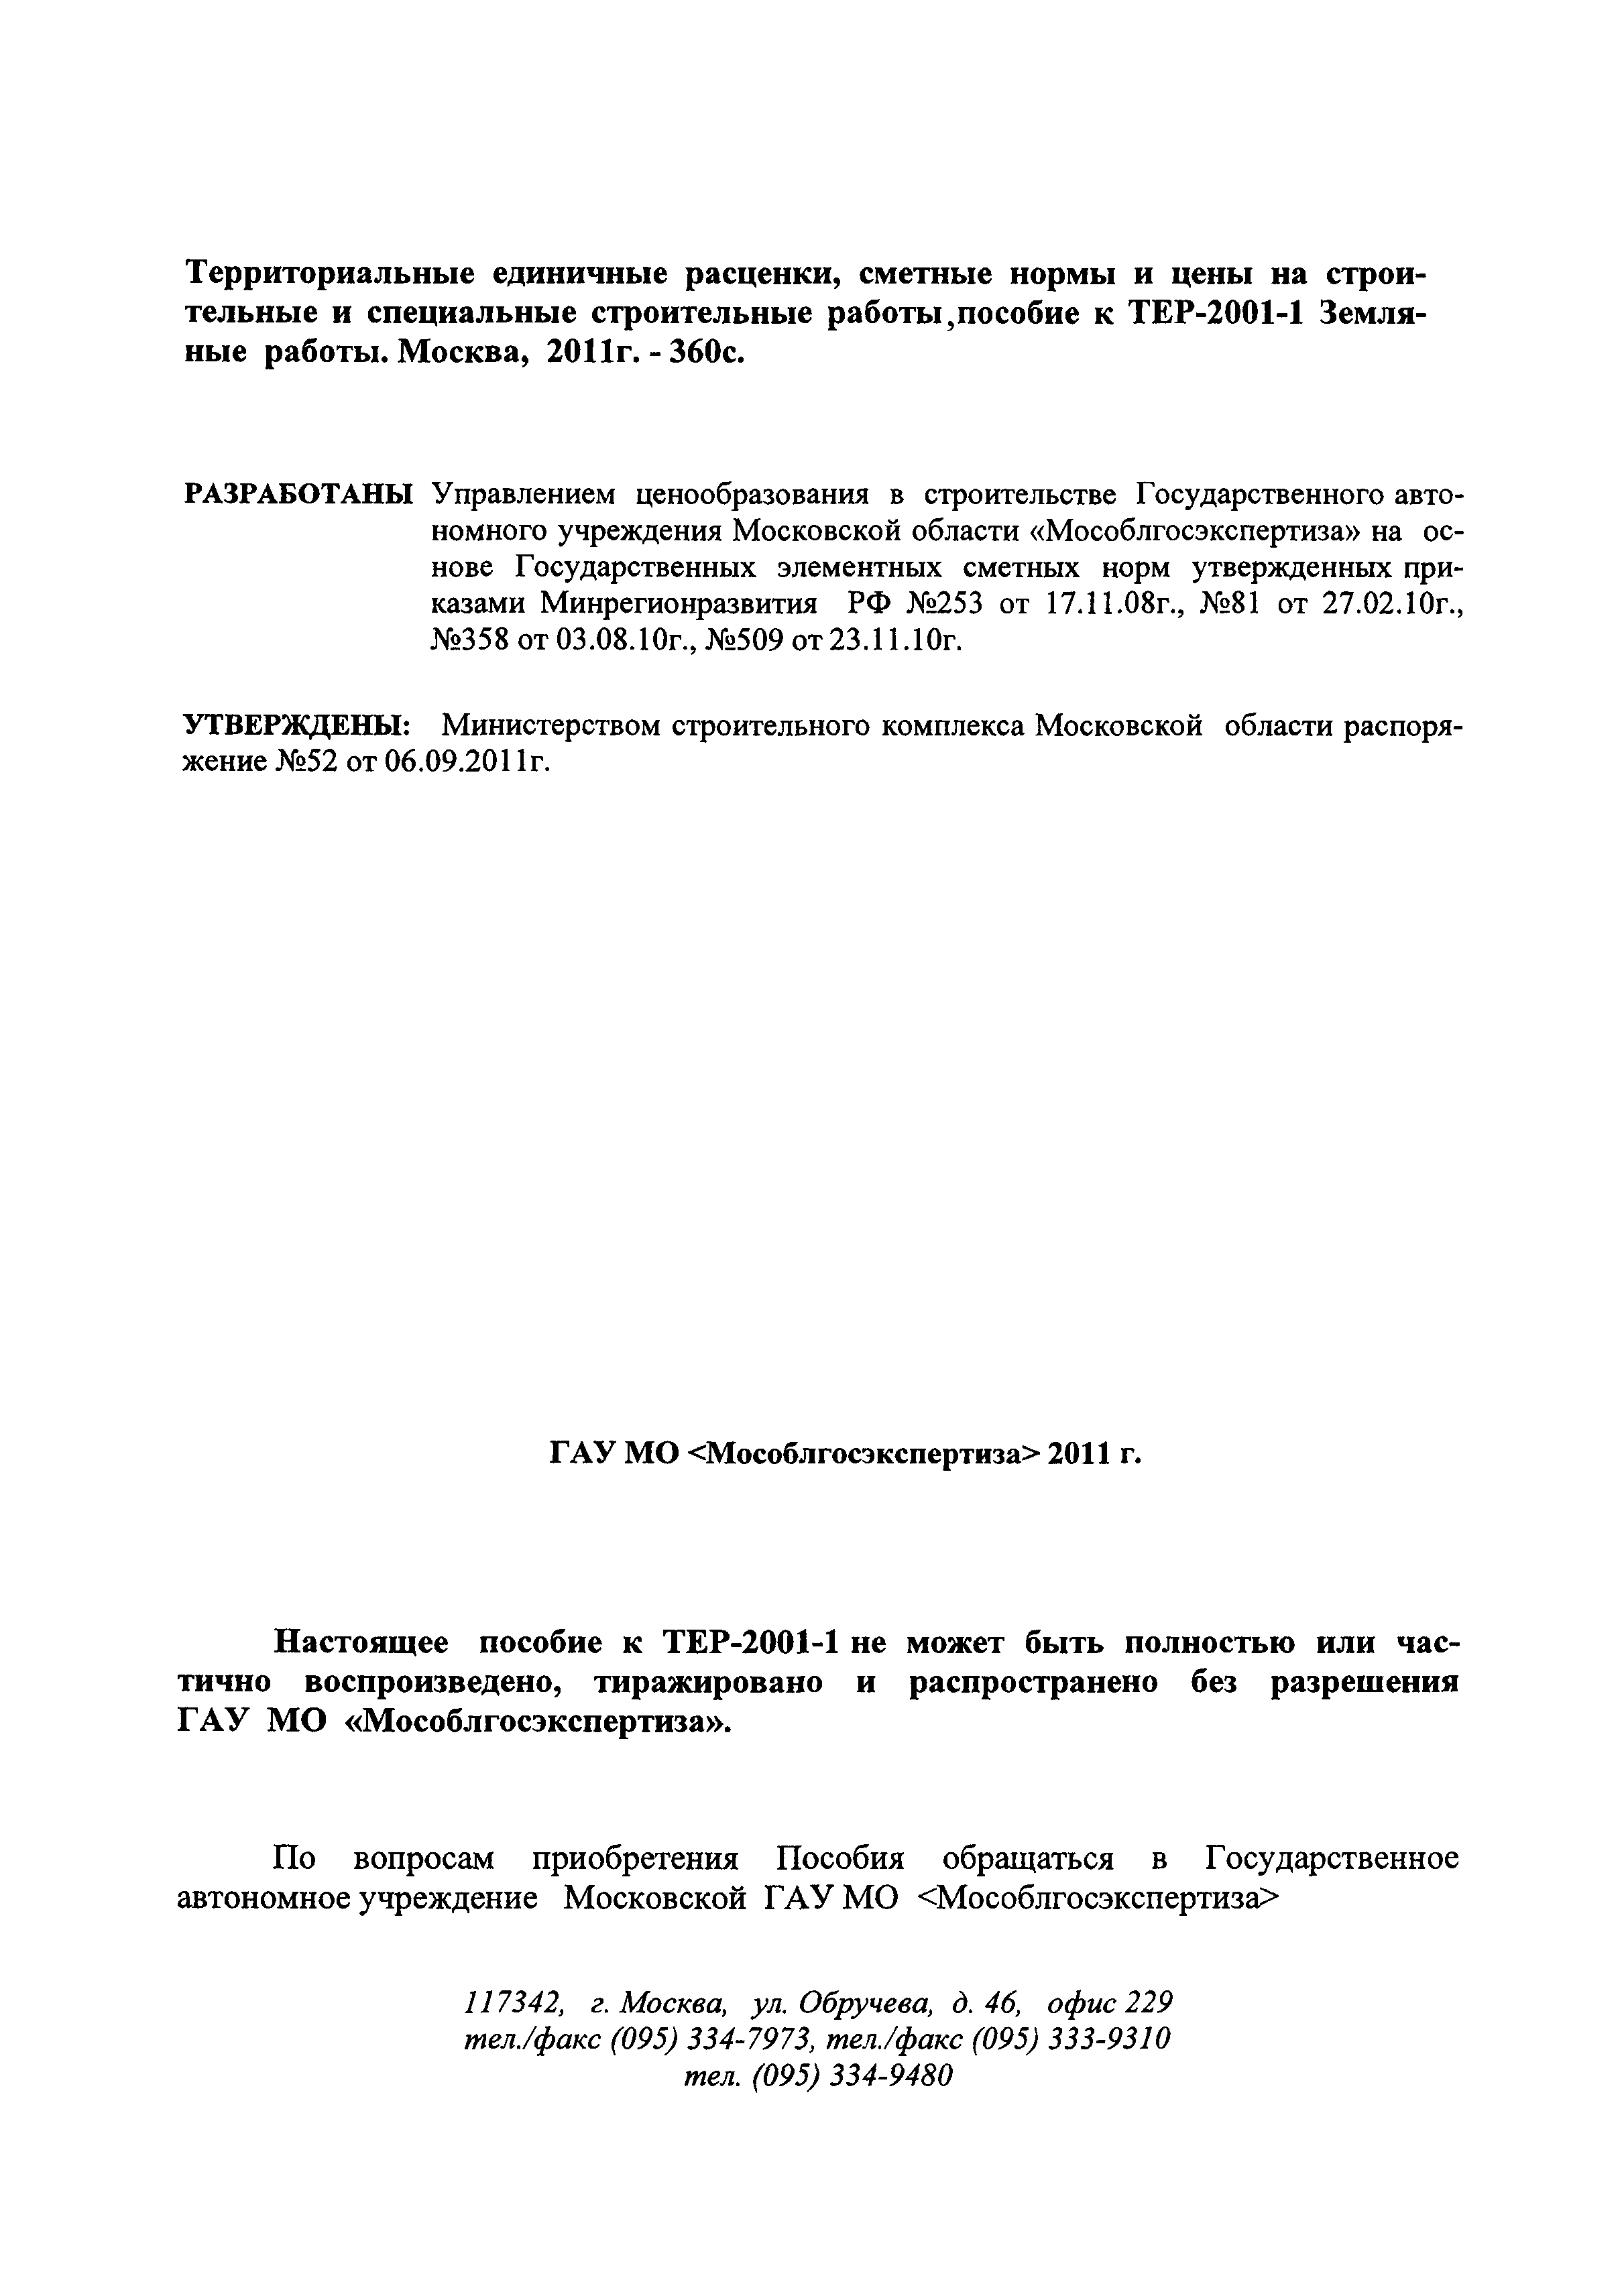 ГЭСНПиТЕР 2001-1 Московской области